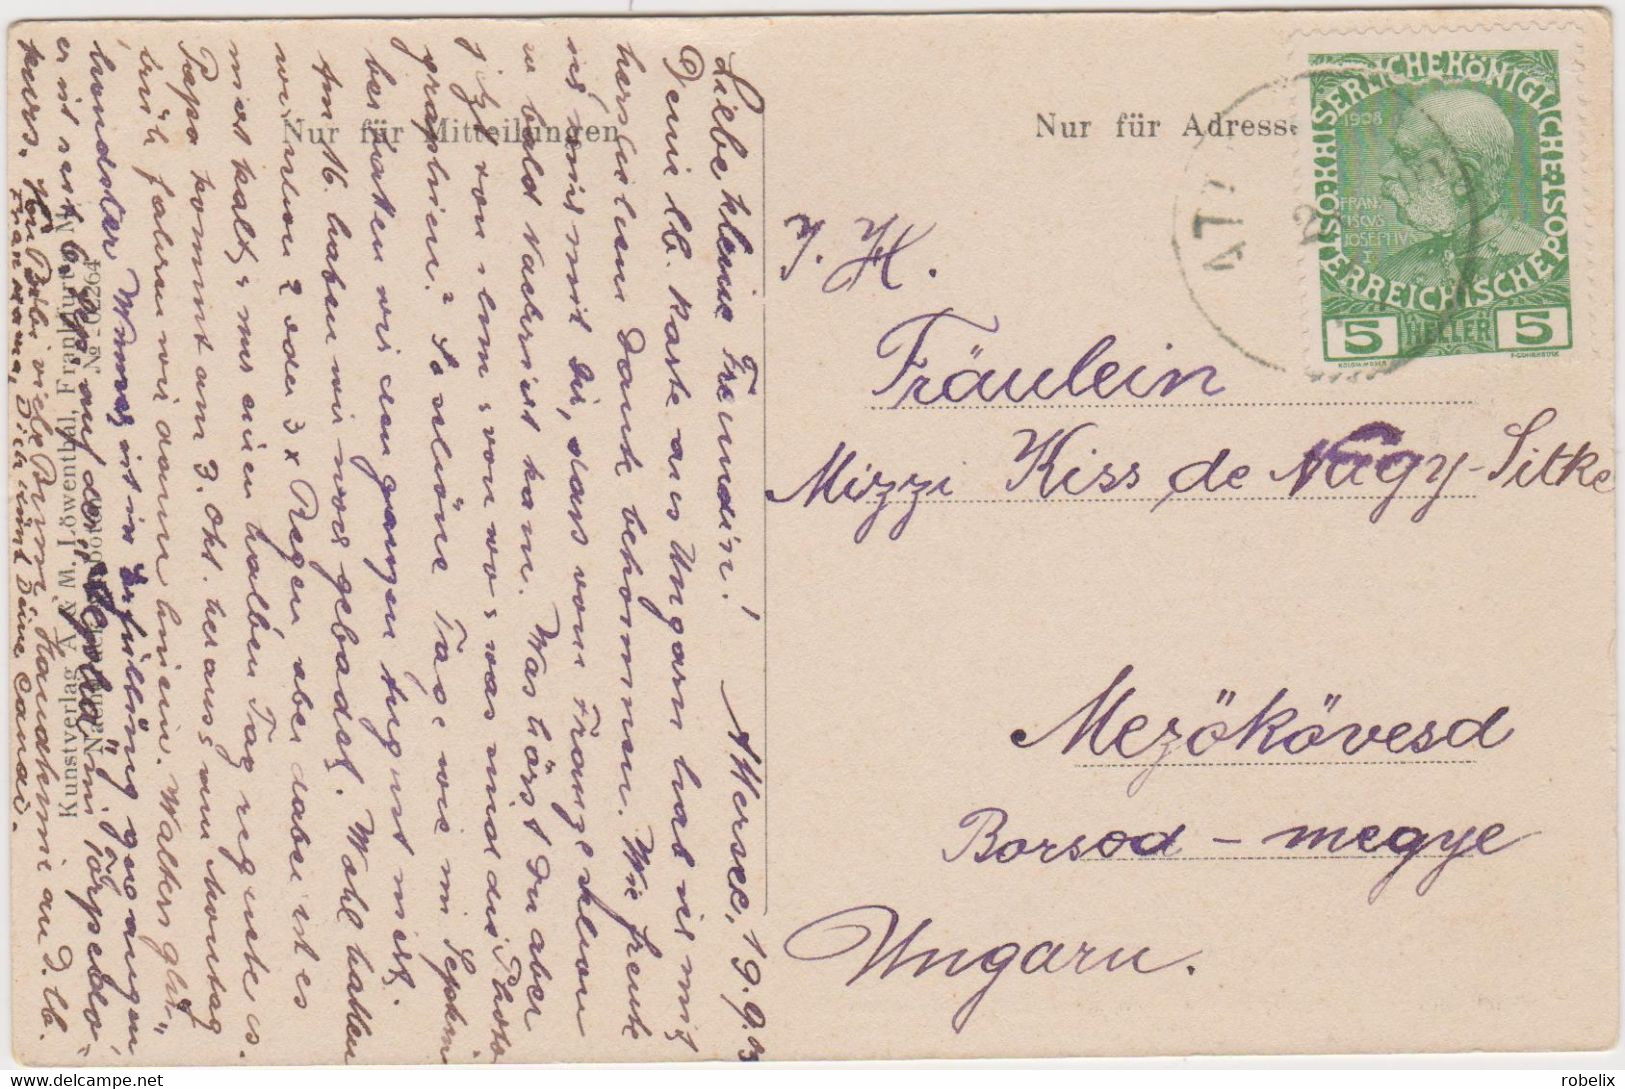 OSTERREICH - AUSTRIA - Salzkammergut  - Attersee  (Kunstblatt  Von Frommel Aus Dem Jahre 1840)   1903 - Attersee-Orte